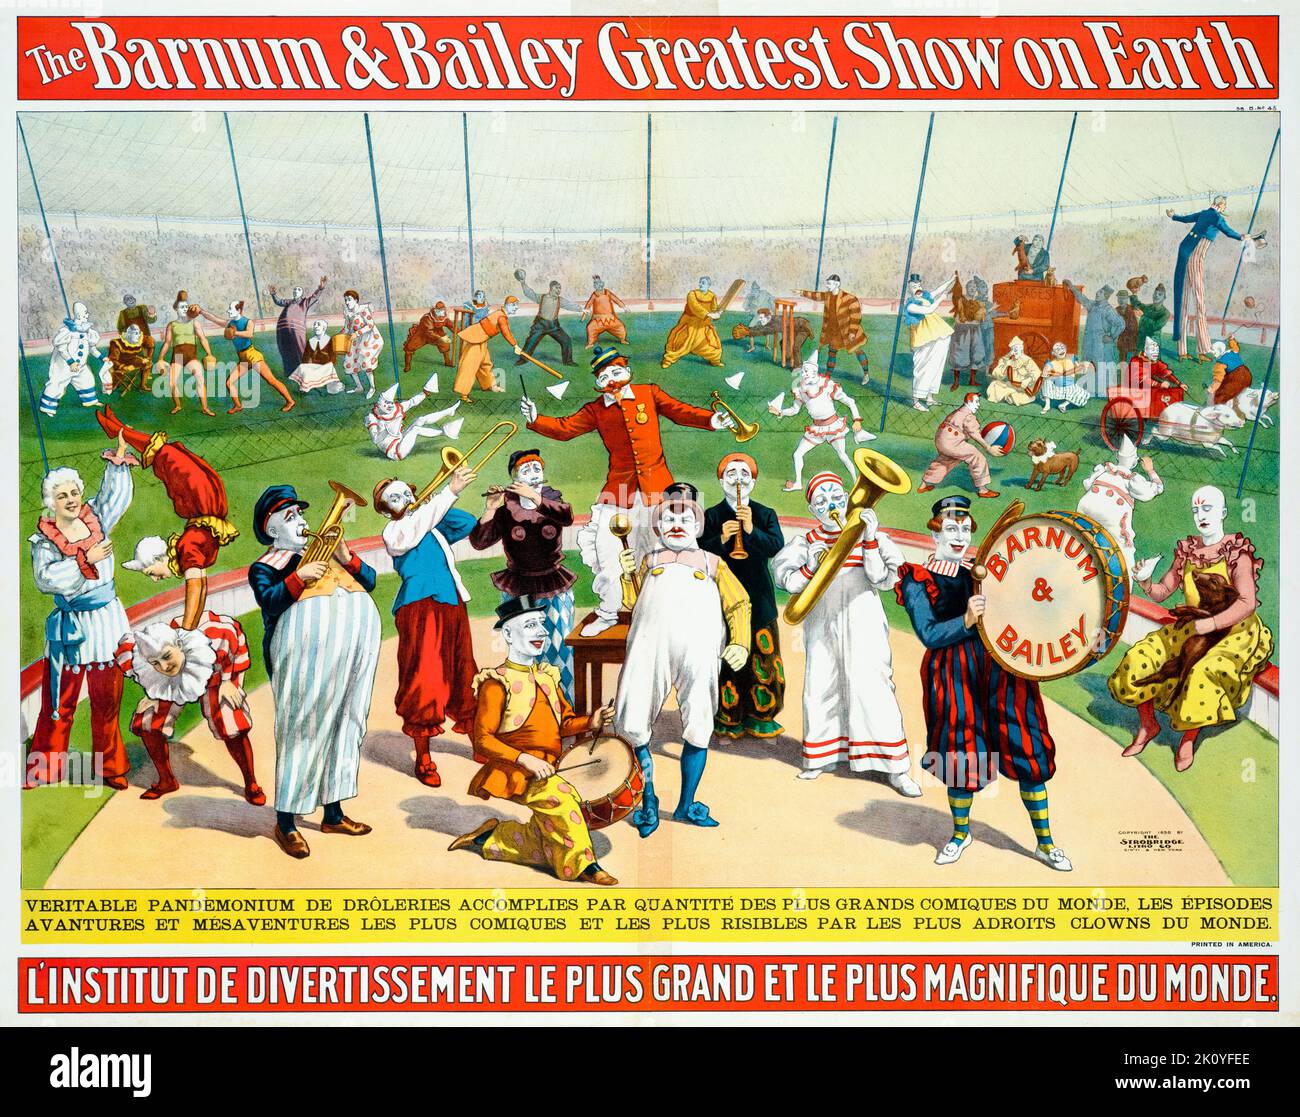 The Barnum & Bailey Greatest Show on Earth, Circus Poster en francés, por Strobridge Lithograph Company, 1898 Foto de stock